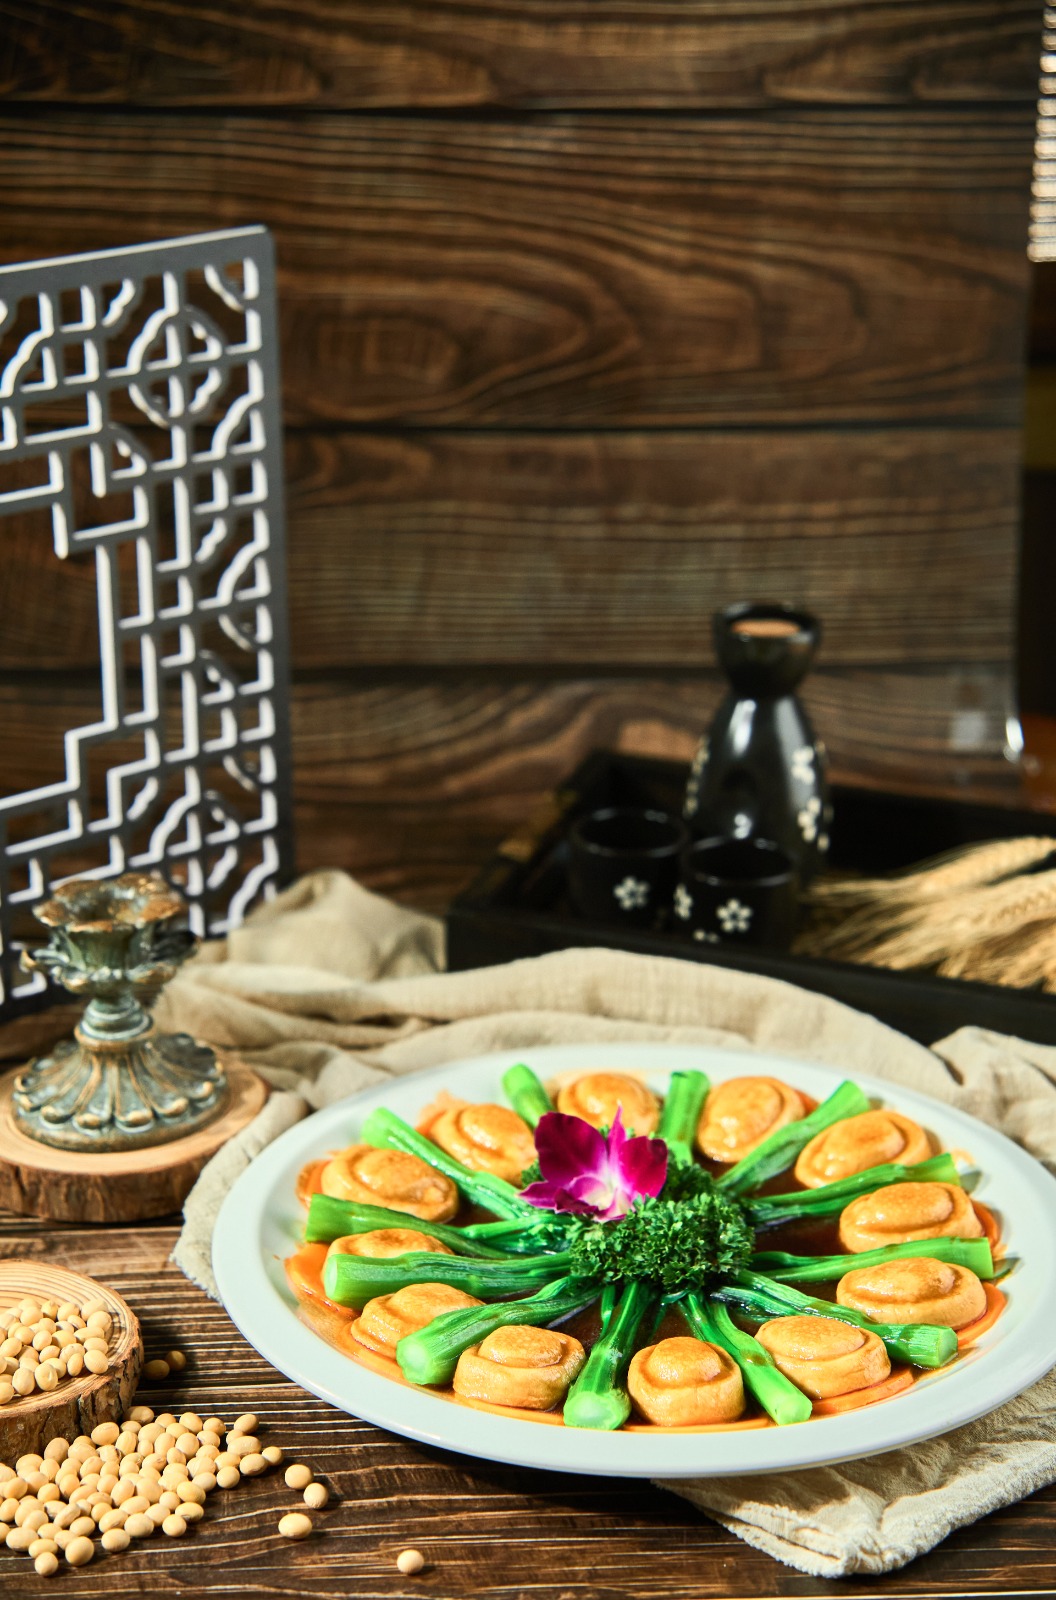 Image Vegetarian Pearl Abalone 奇乡 -素食珍珠鲍 250grams